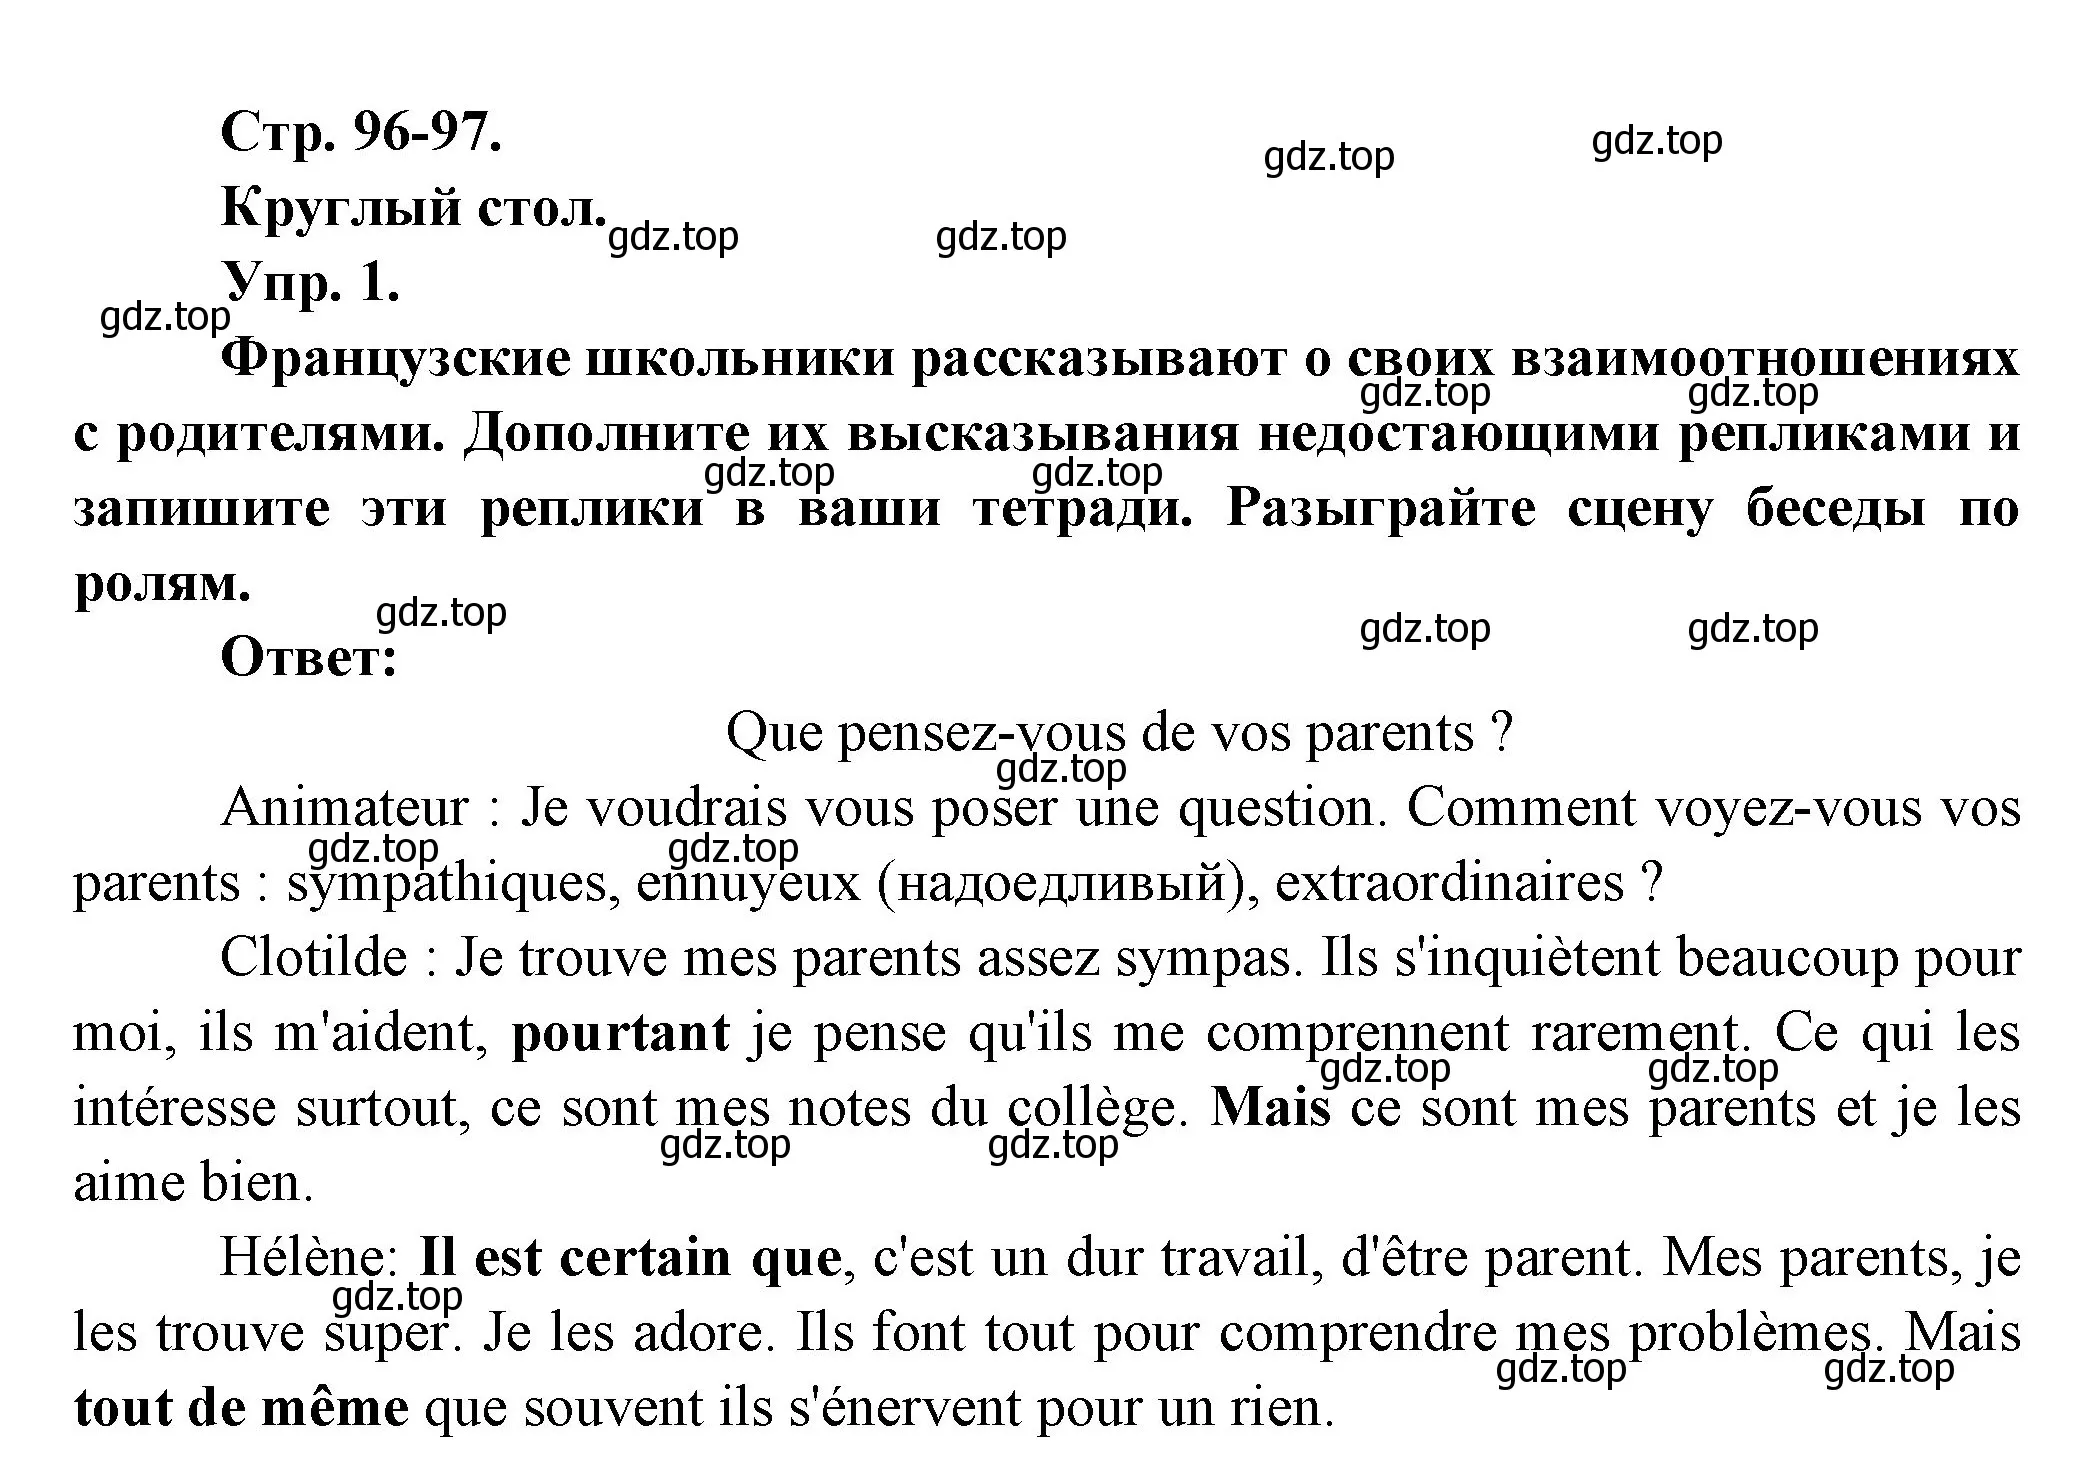 Решение Страница 96-97 гдз по французскому языку 7 класс Селиванова, Шашурина, учебник